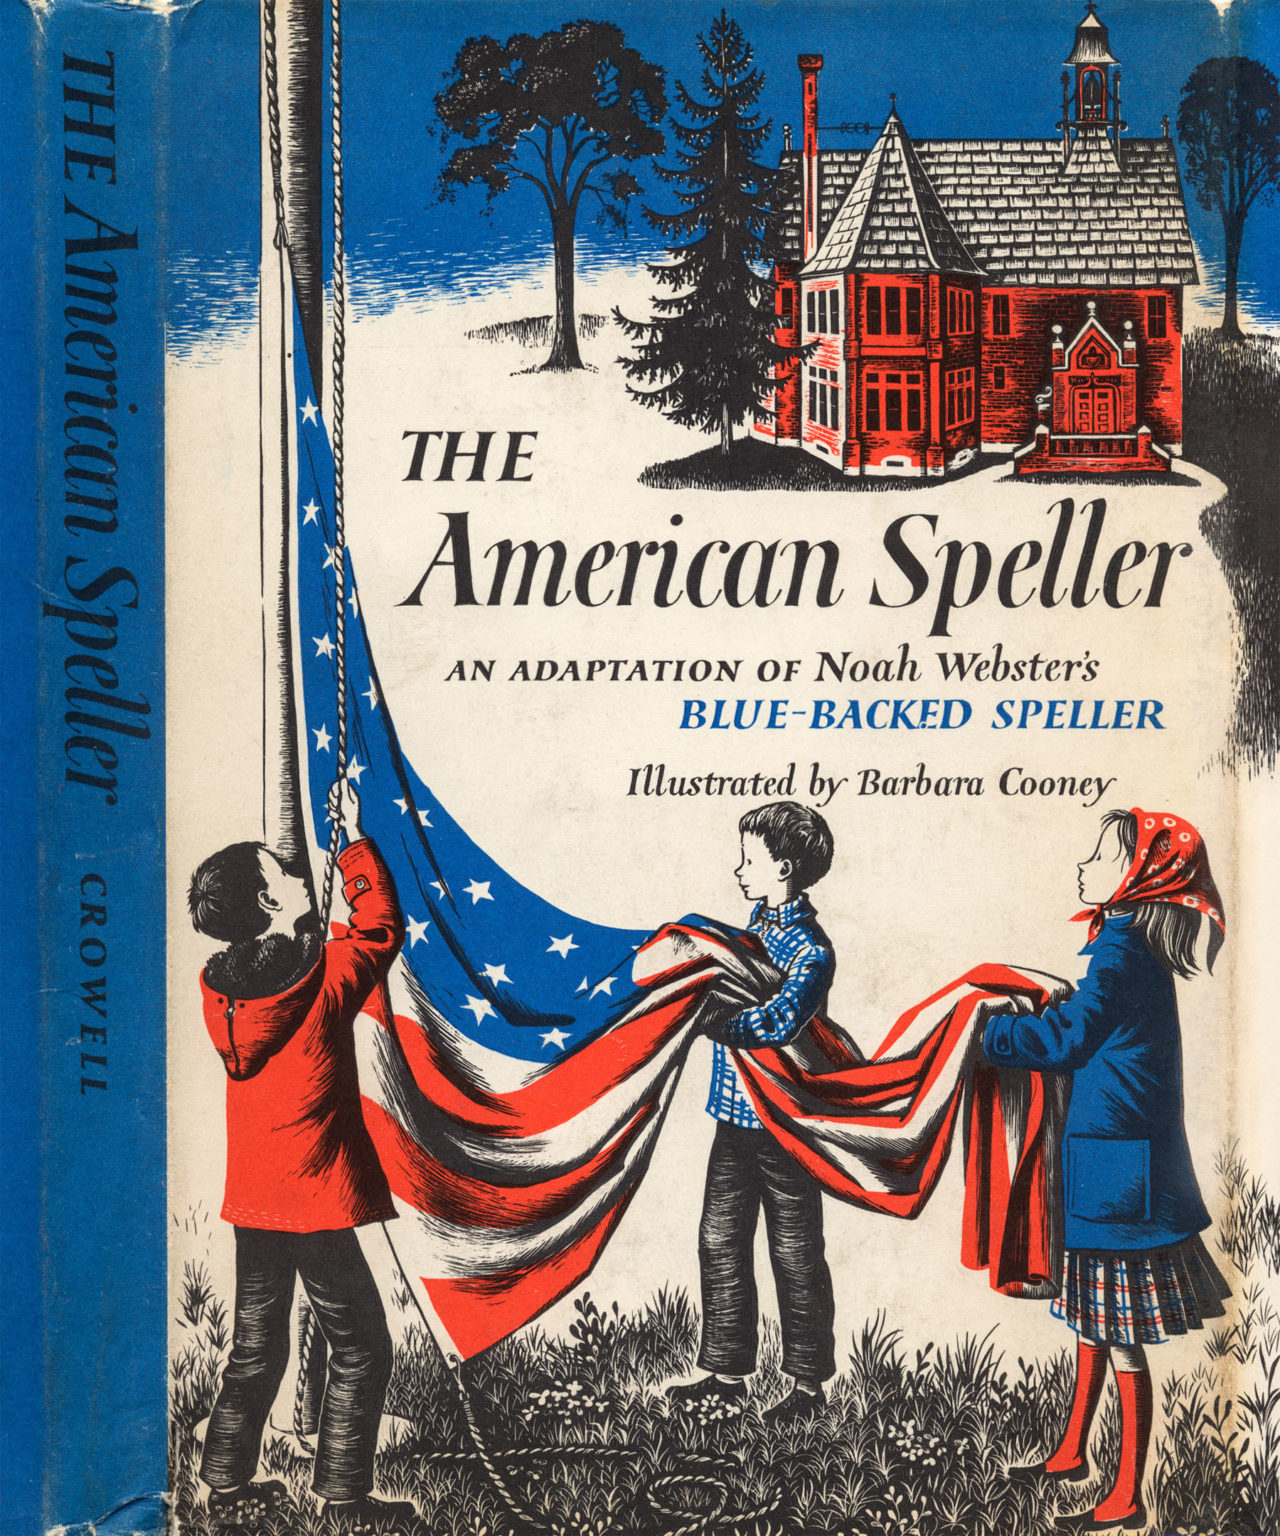 The American Speller